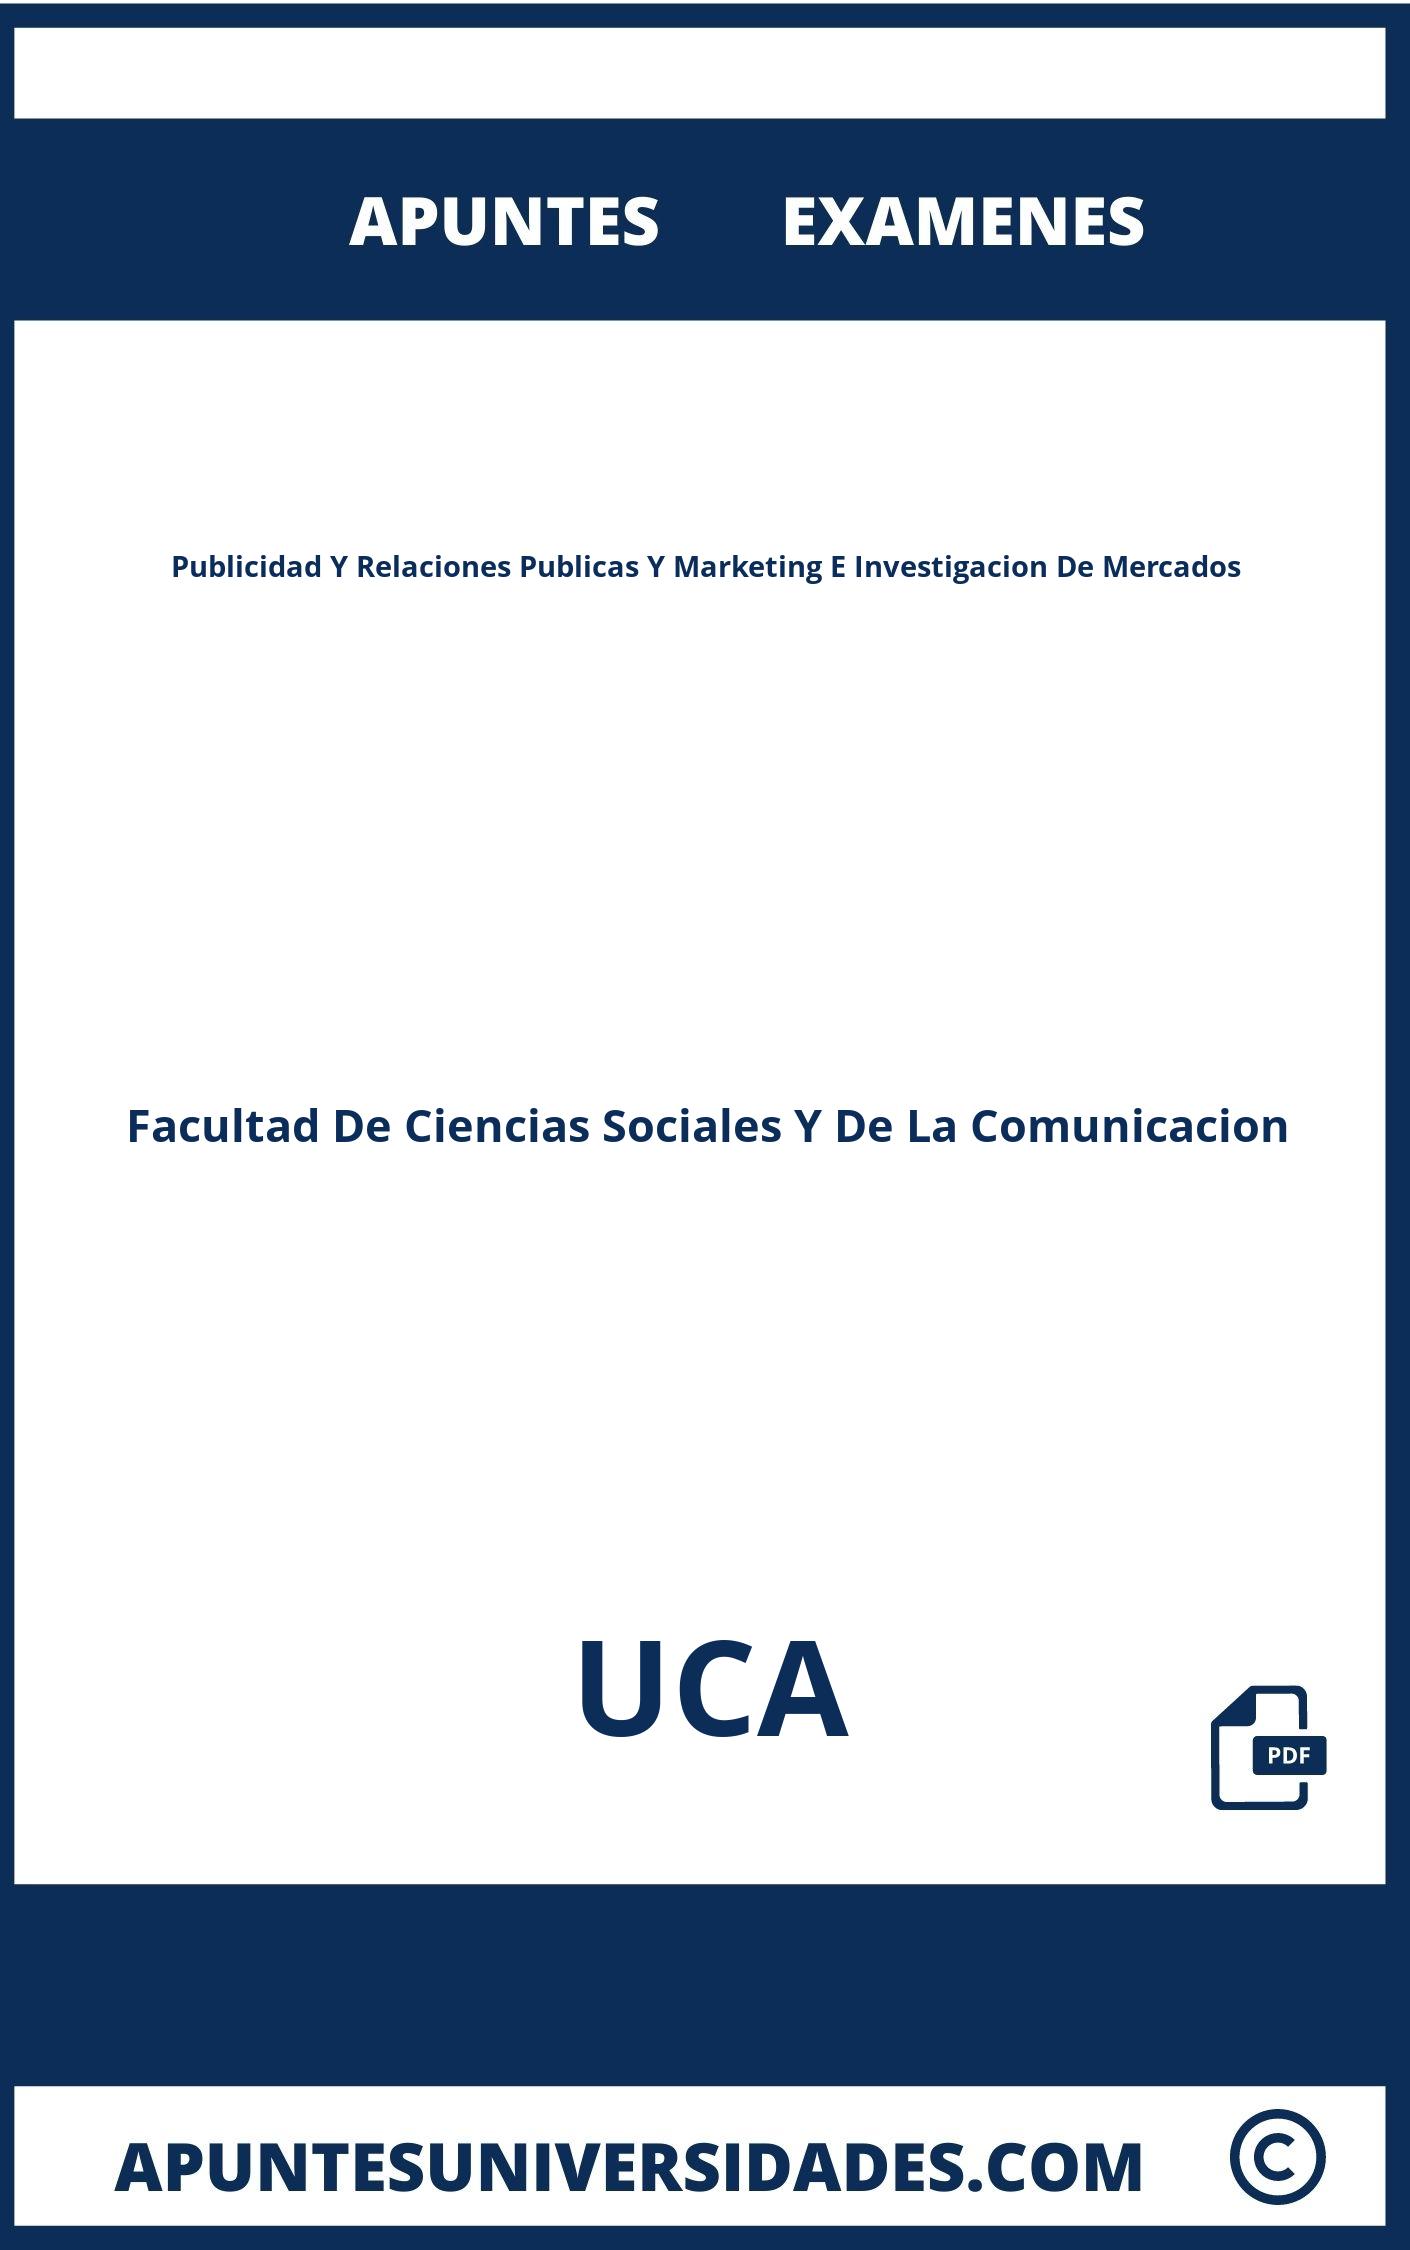 Examenes y Apuntes Publicidad Y Relaciones Publicas Y Marketing E Investigacion De Mercados UCA